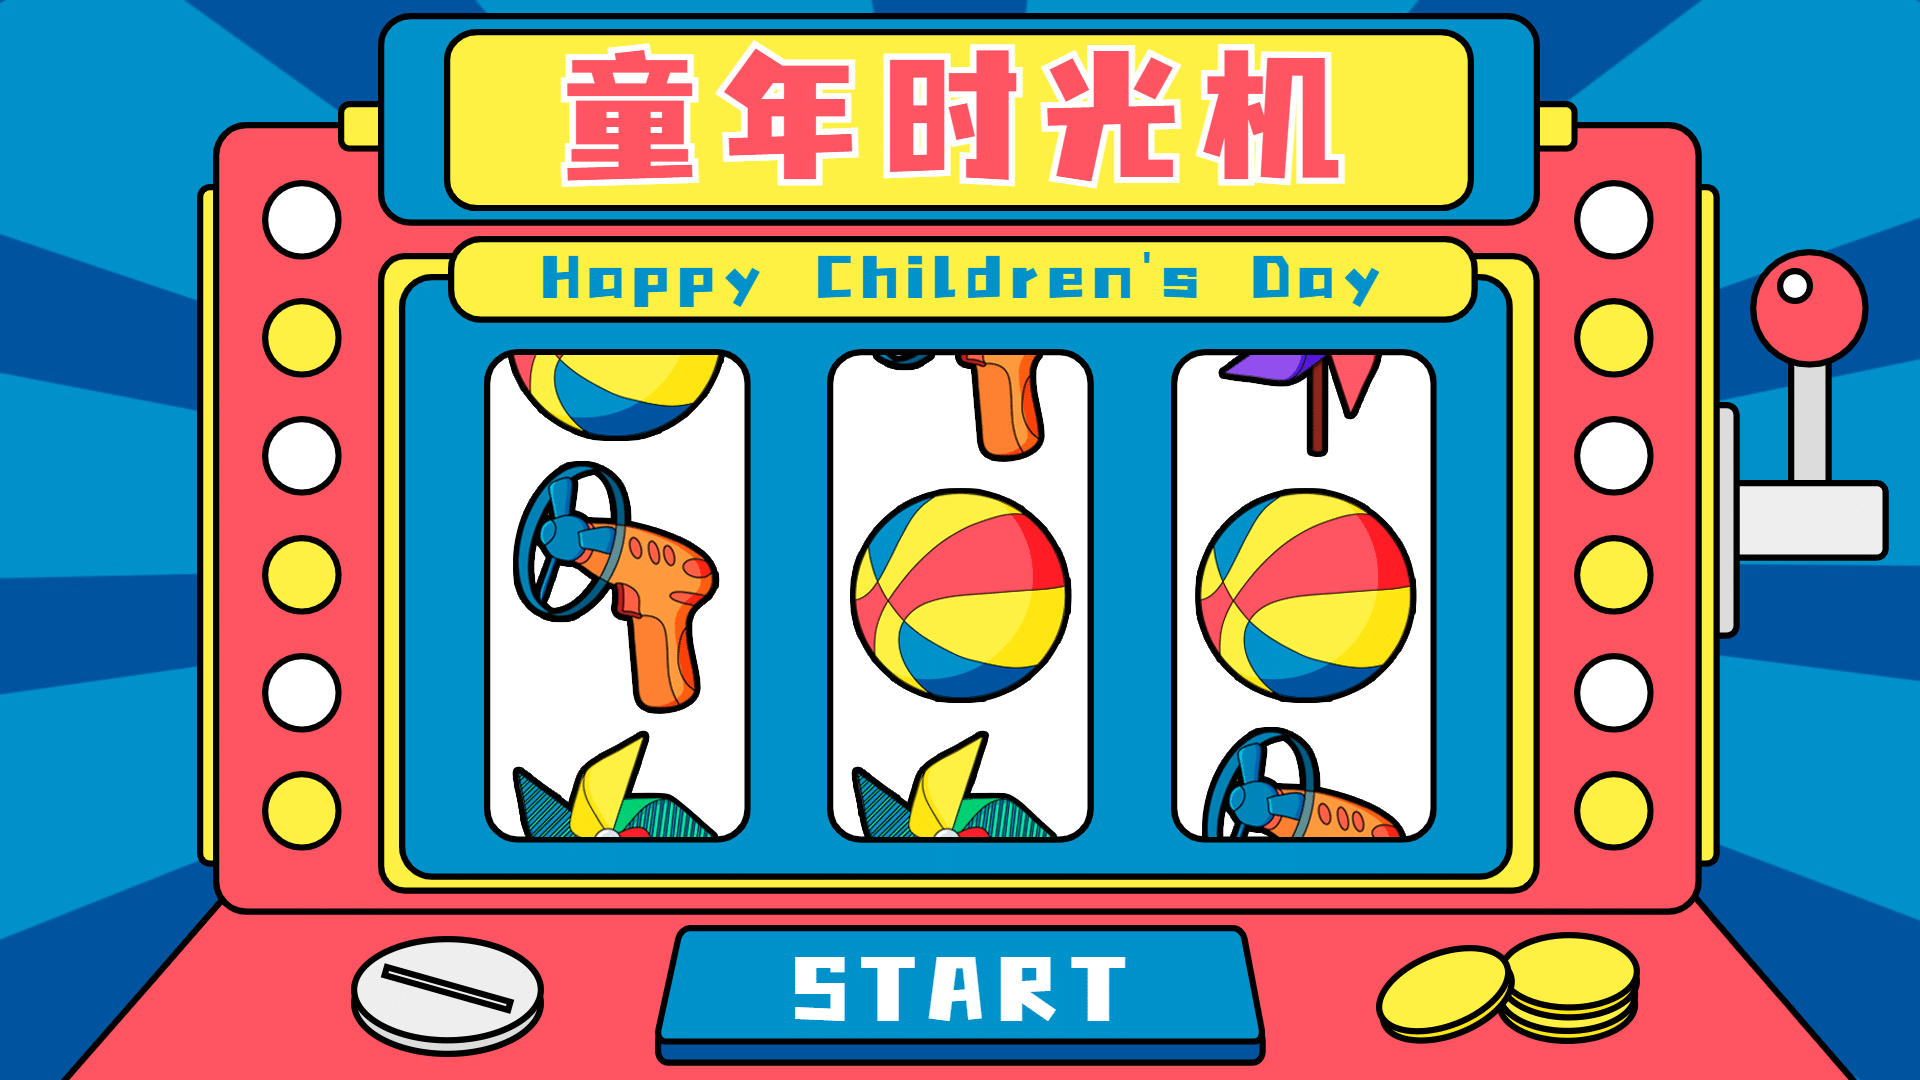 61儿童节老虎机游戏横版视频封面